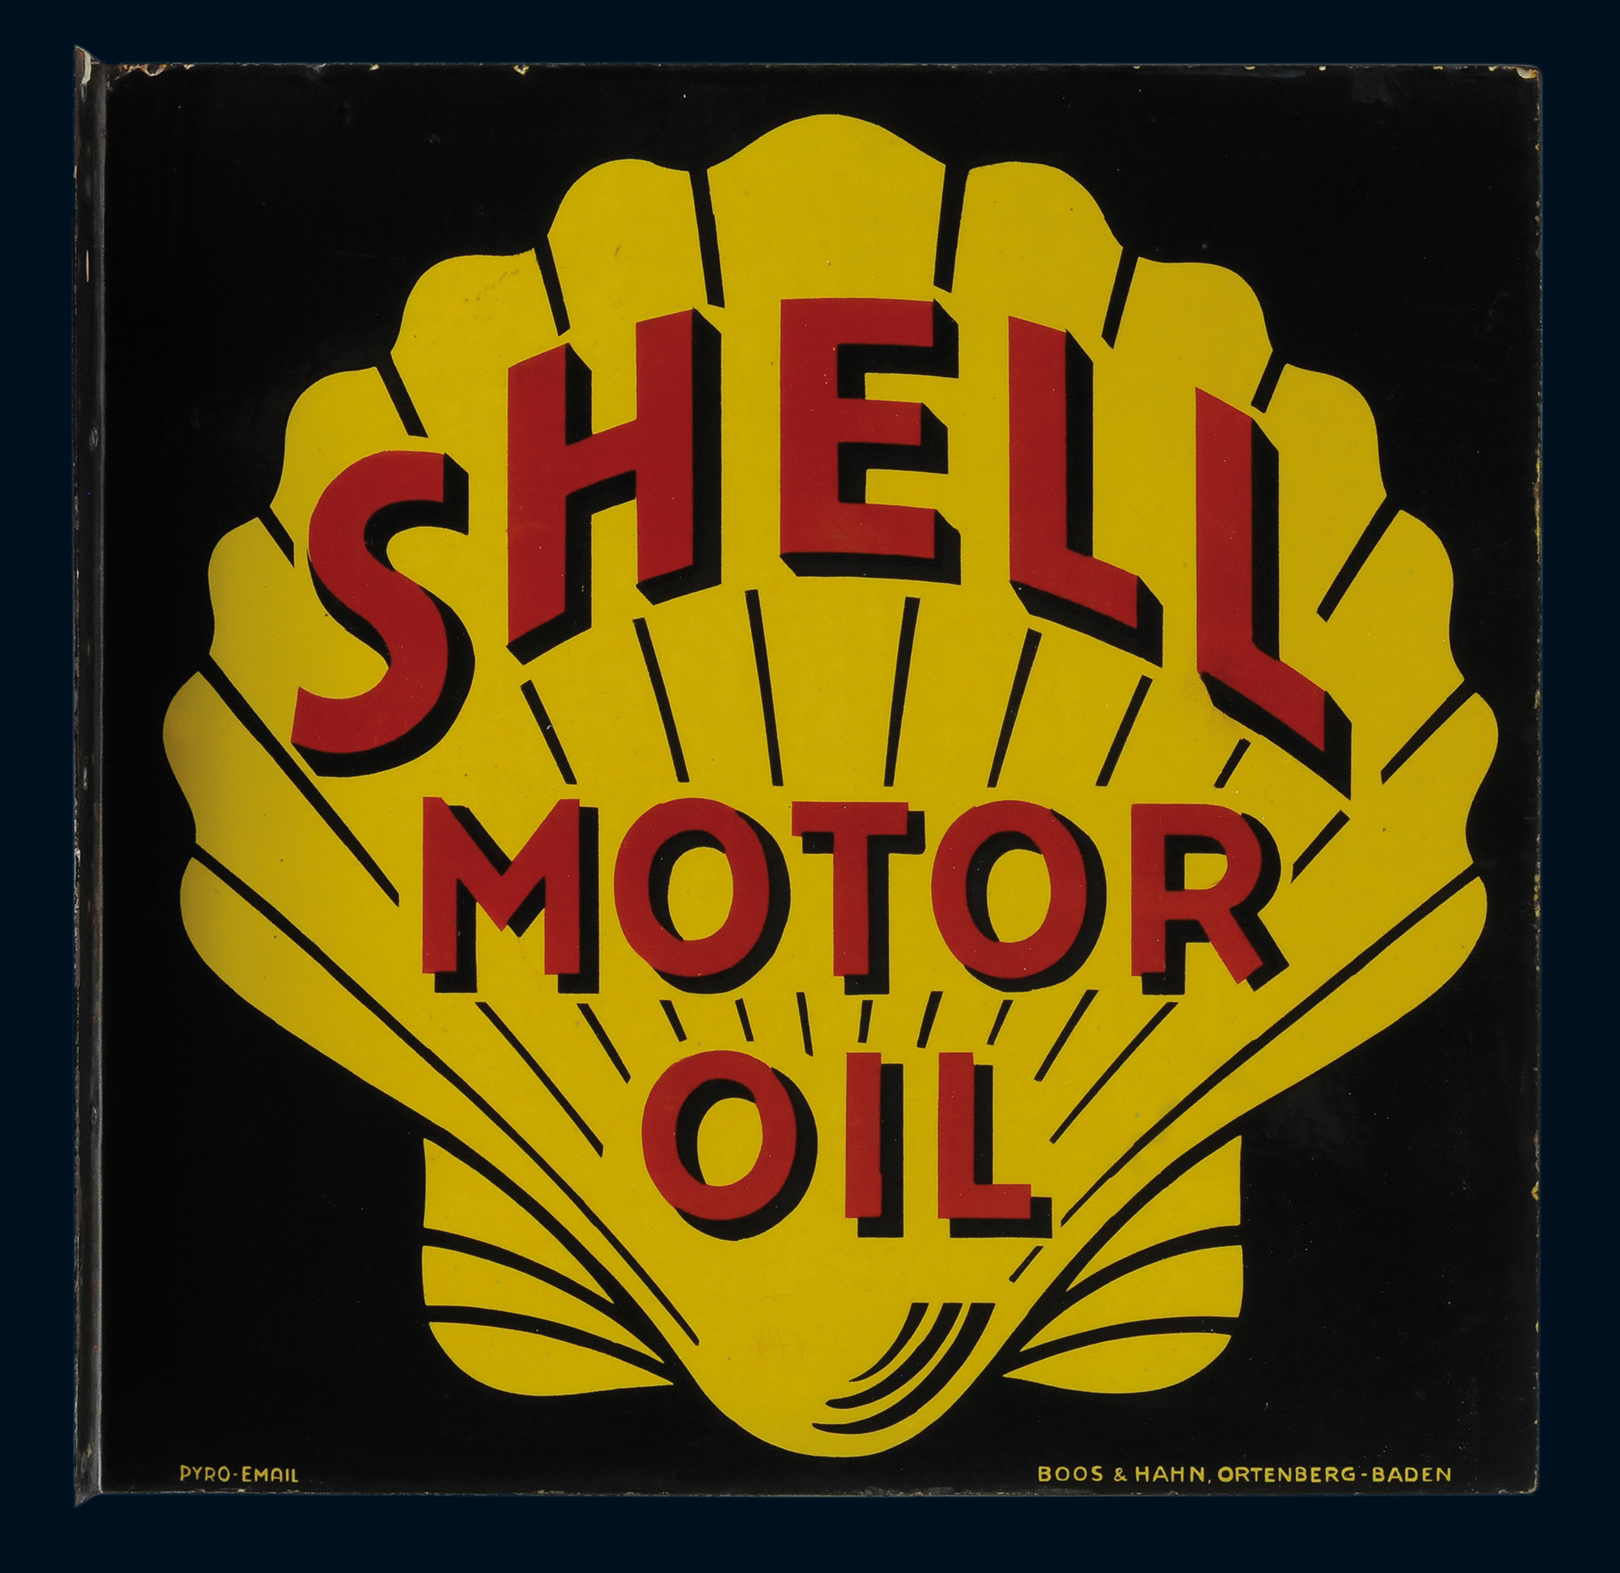 Shell Motor Oil Ausleger